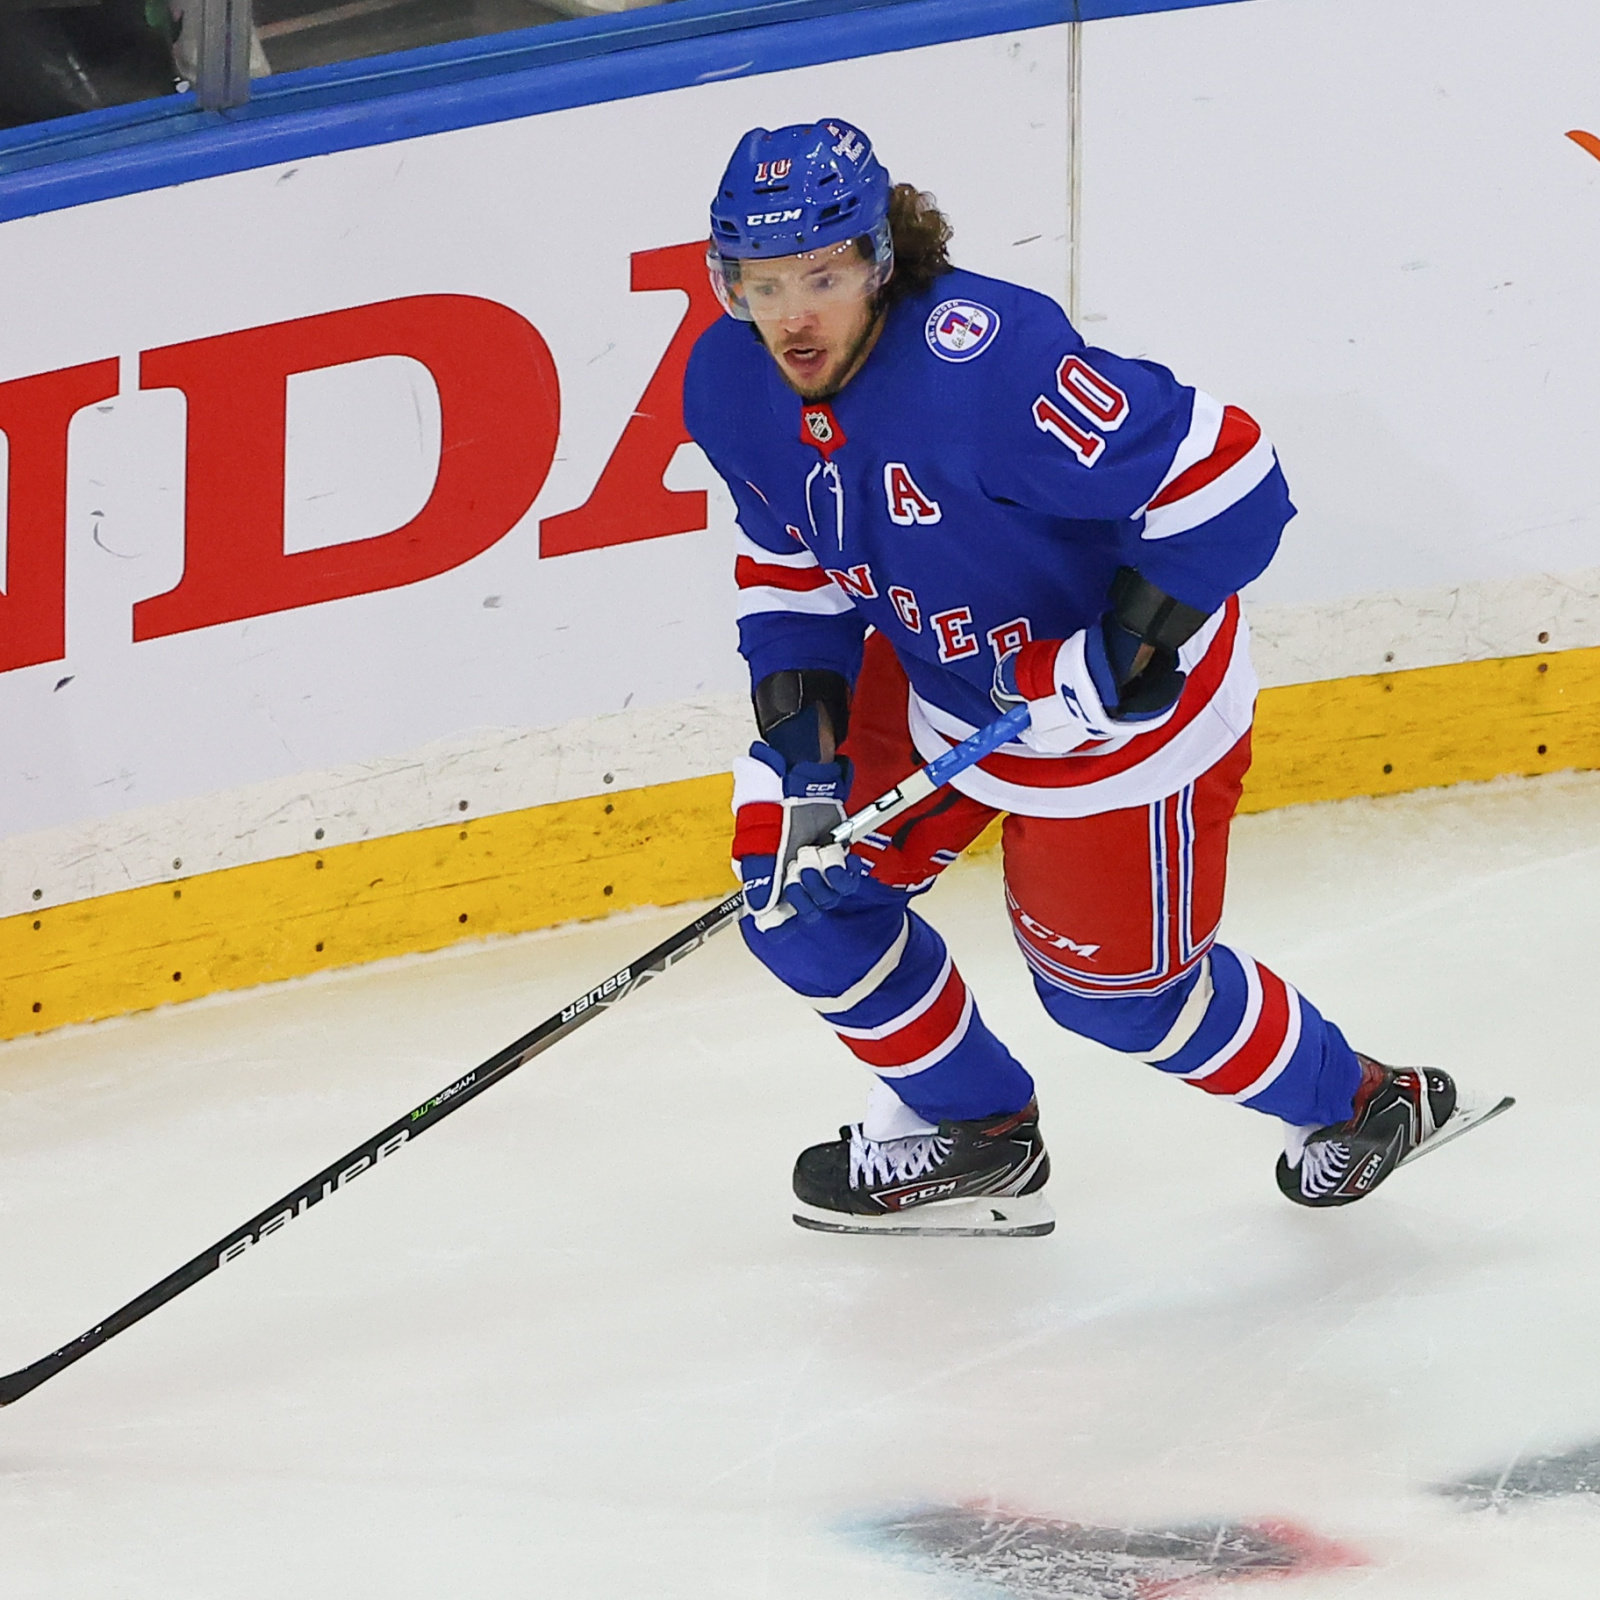 Rangers' Panarin expresses concern over NHL return, finances